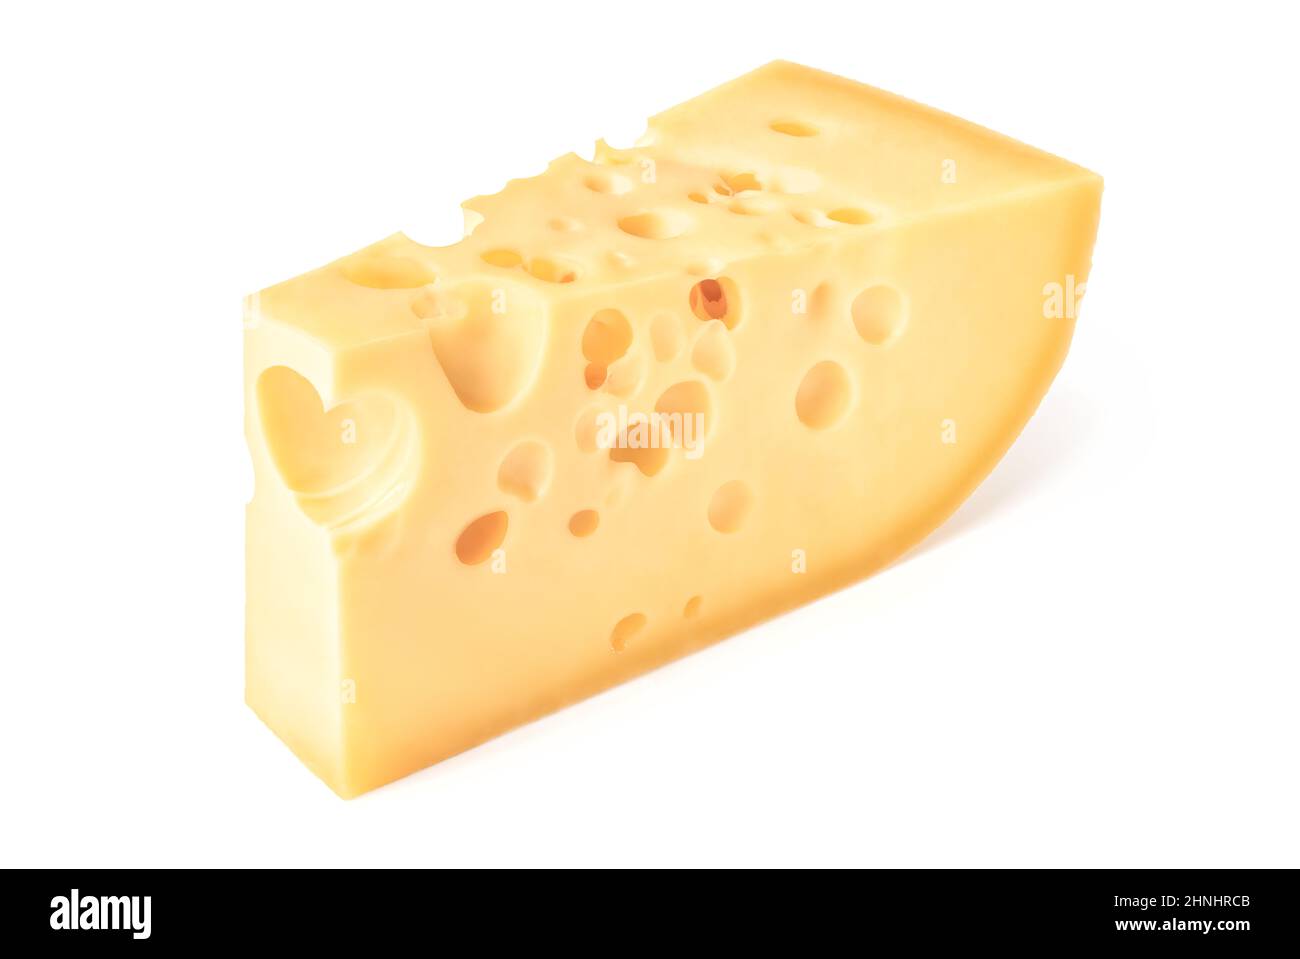 Comida y bebida: Pieza triangular de queso, aislada sobre fondo blanco Foto de stock